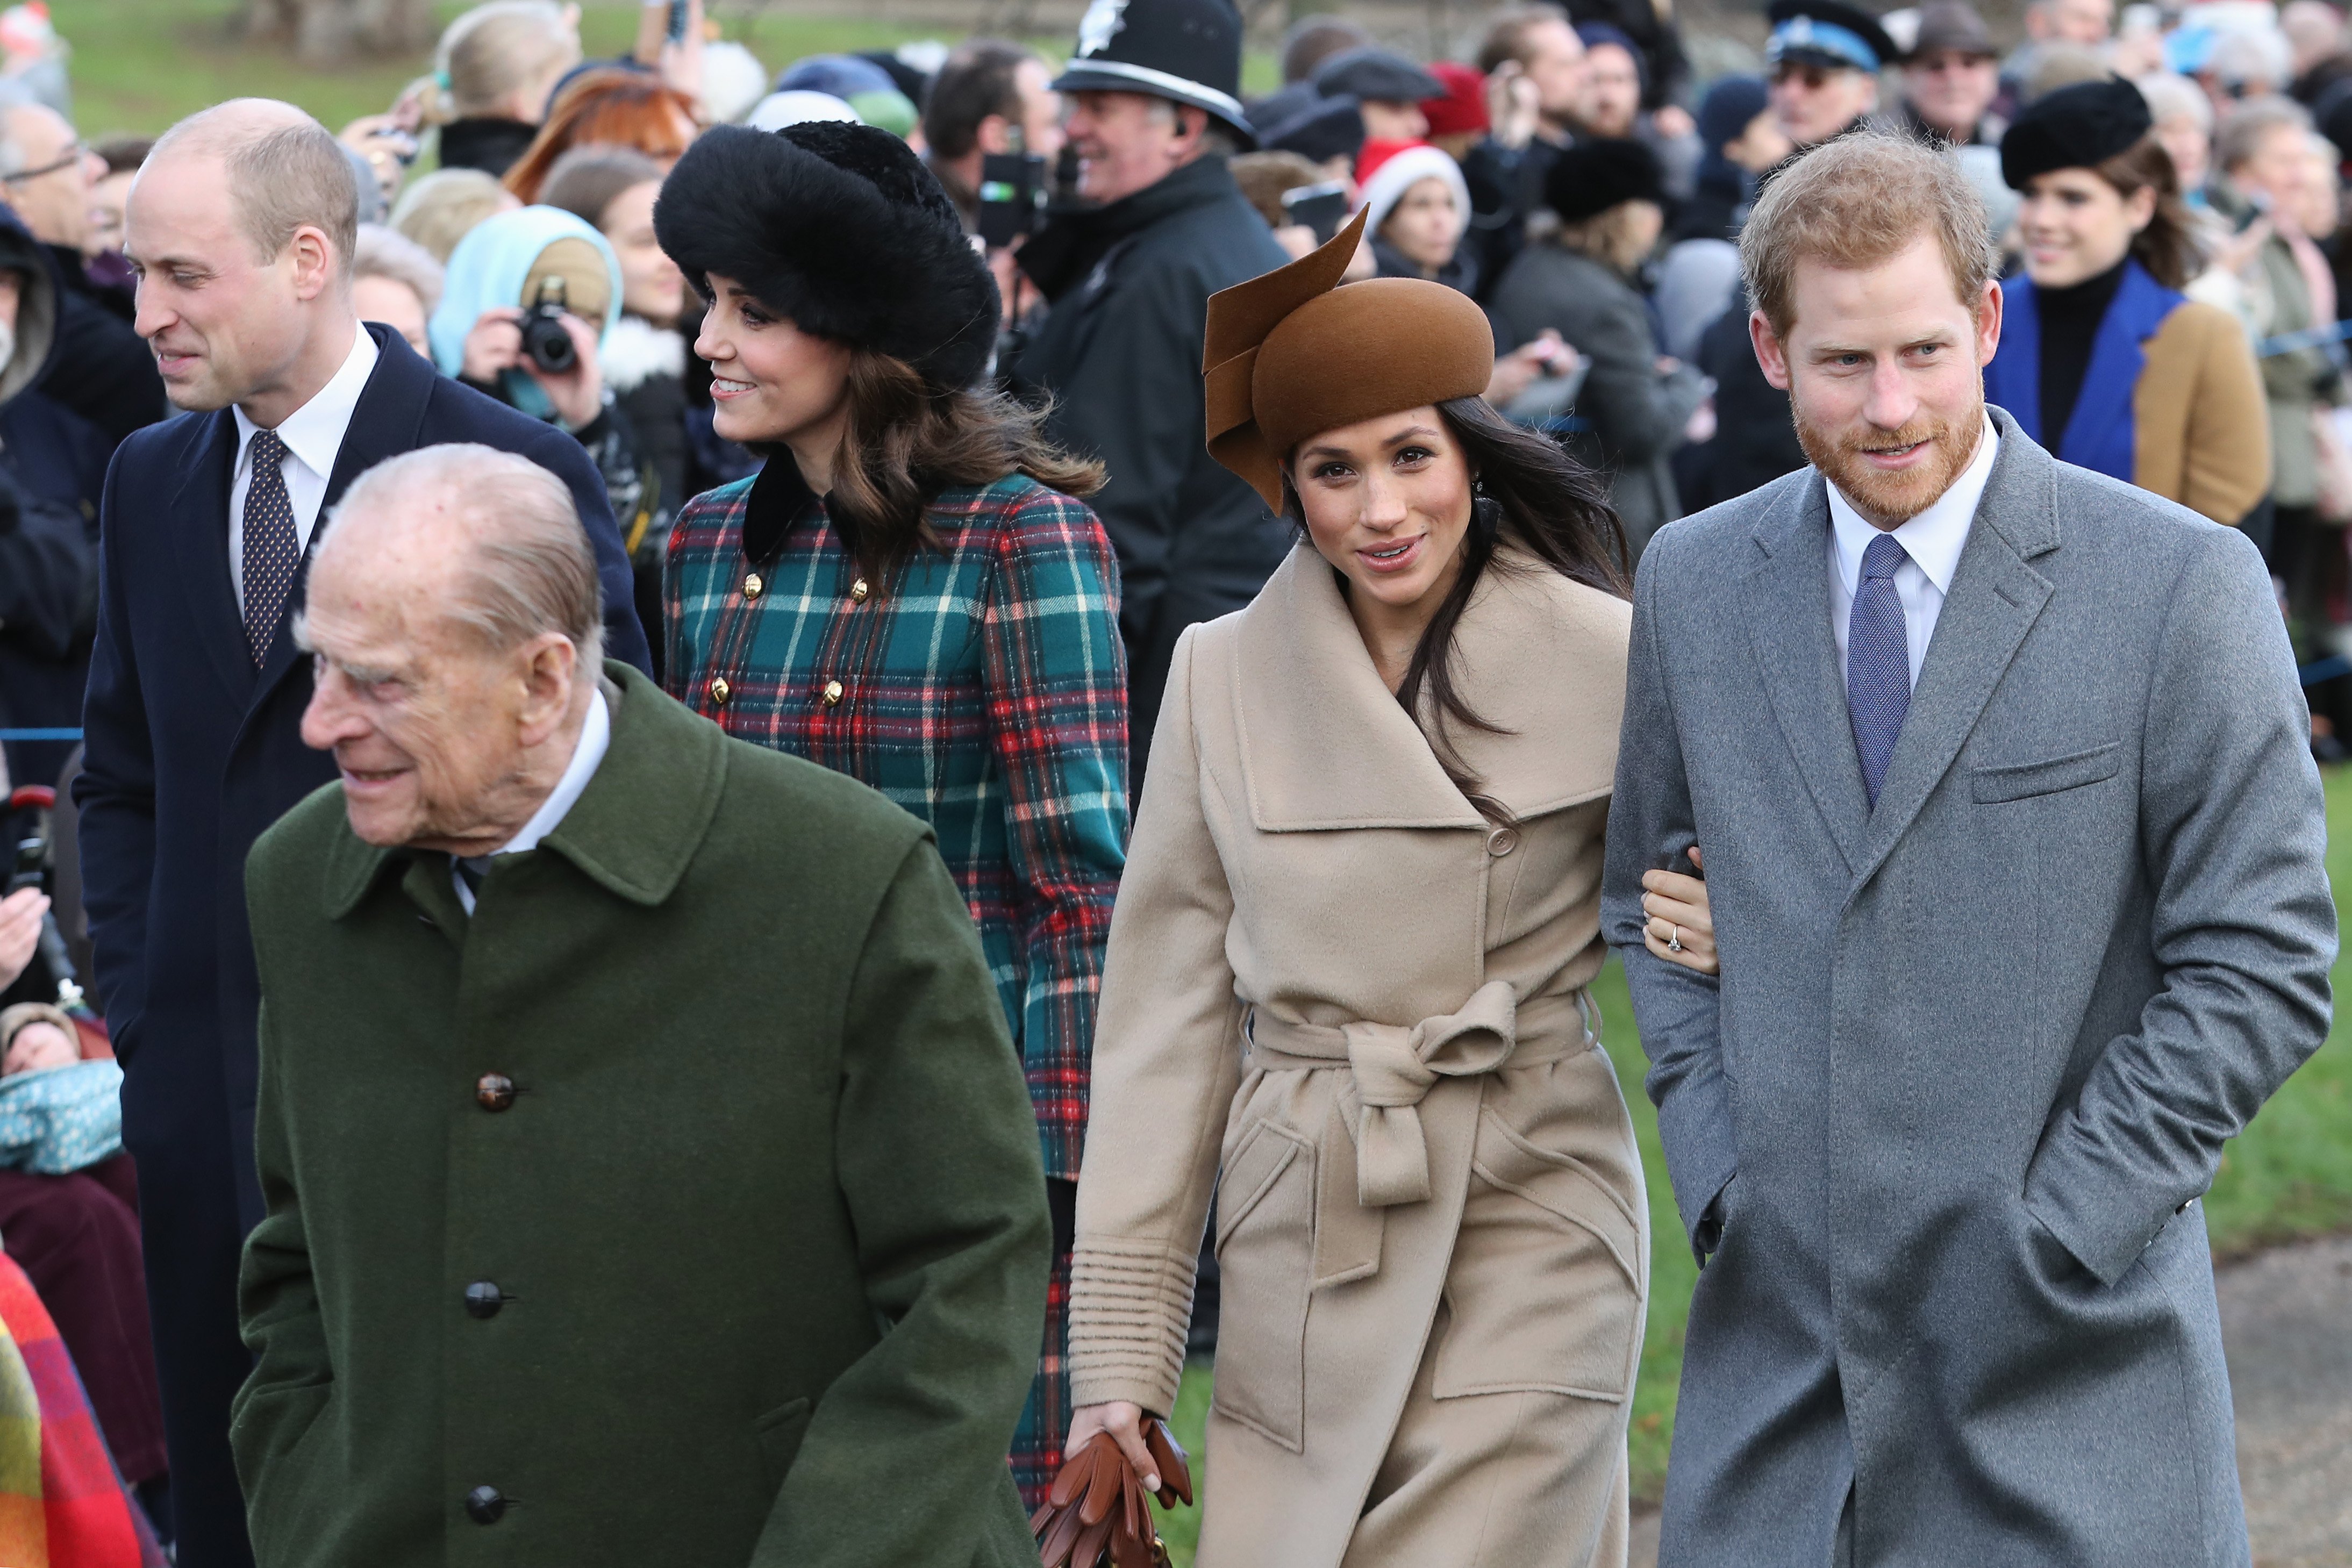 El príncipe William, el príncipe Philip, Kate Middleton, Meghan Markle y el príncipe Harry el 25 de diciembre de 2017 en King's Lynn, Inglaterra. | Foto: Getty Images